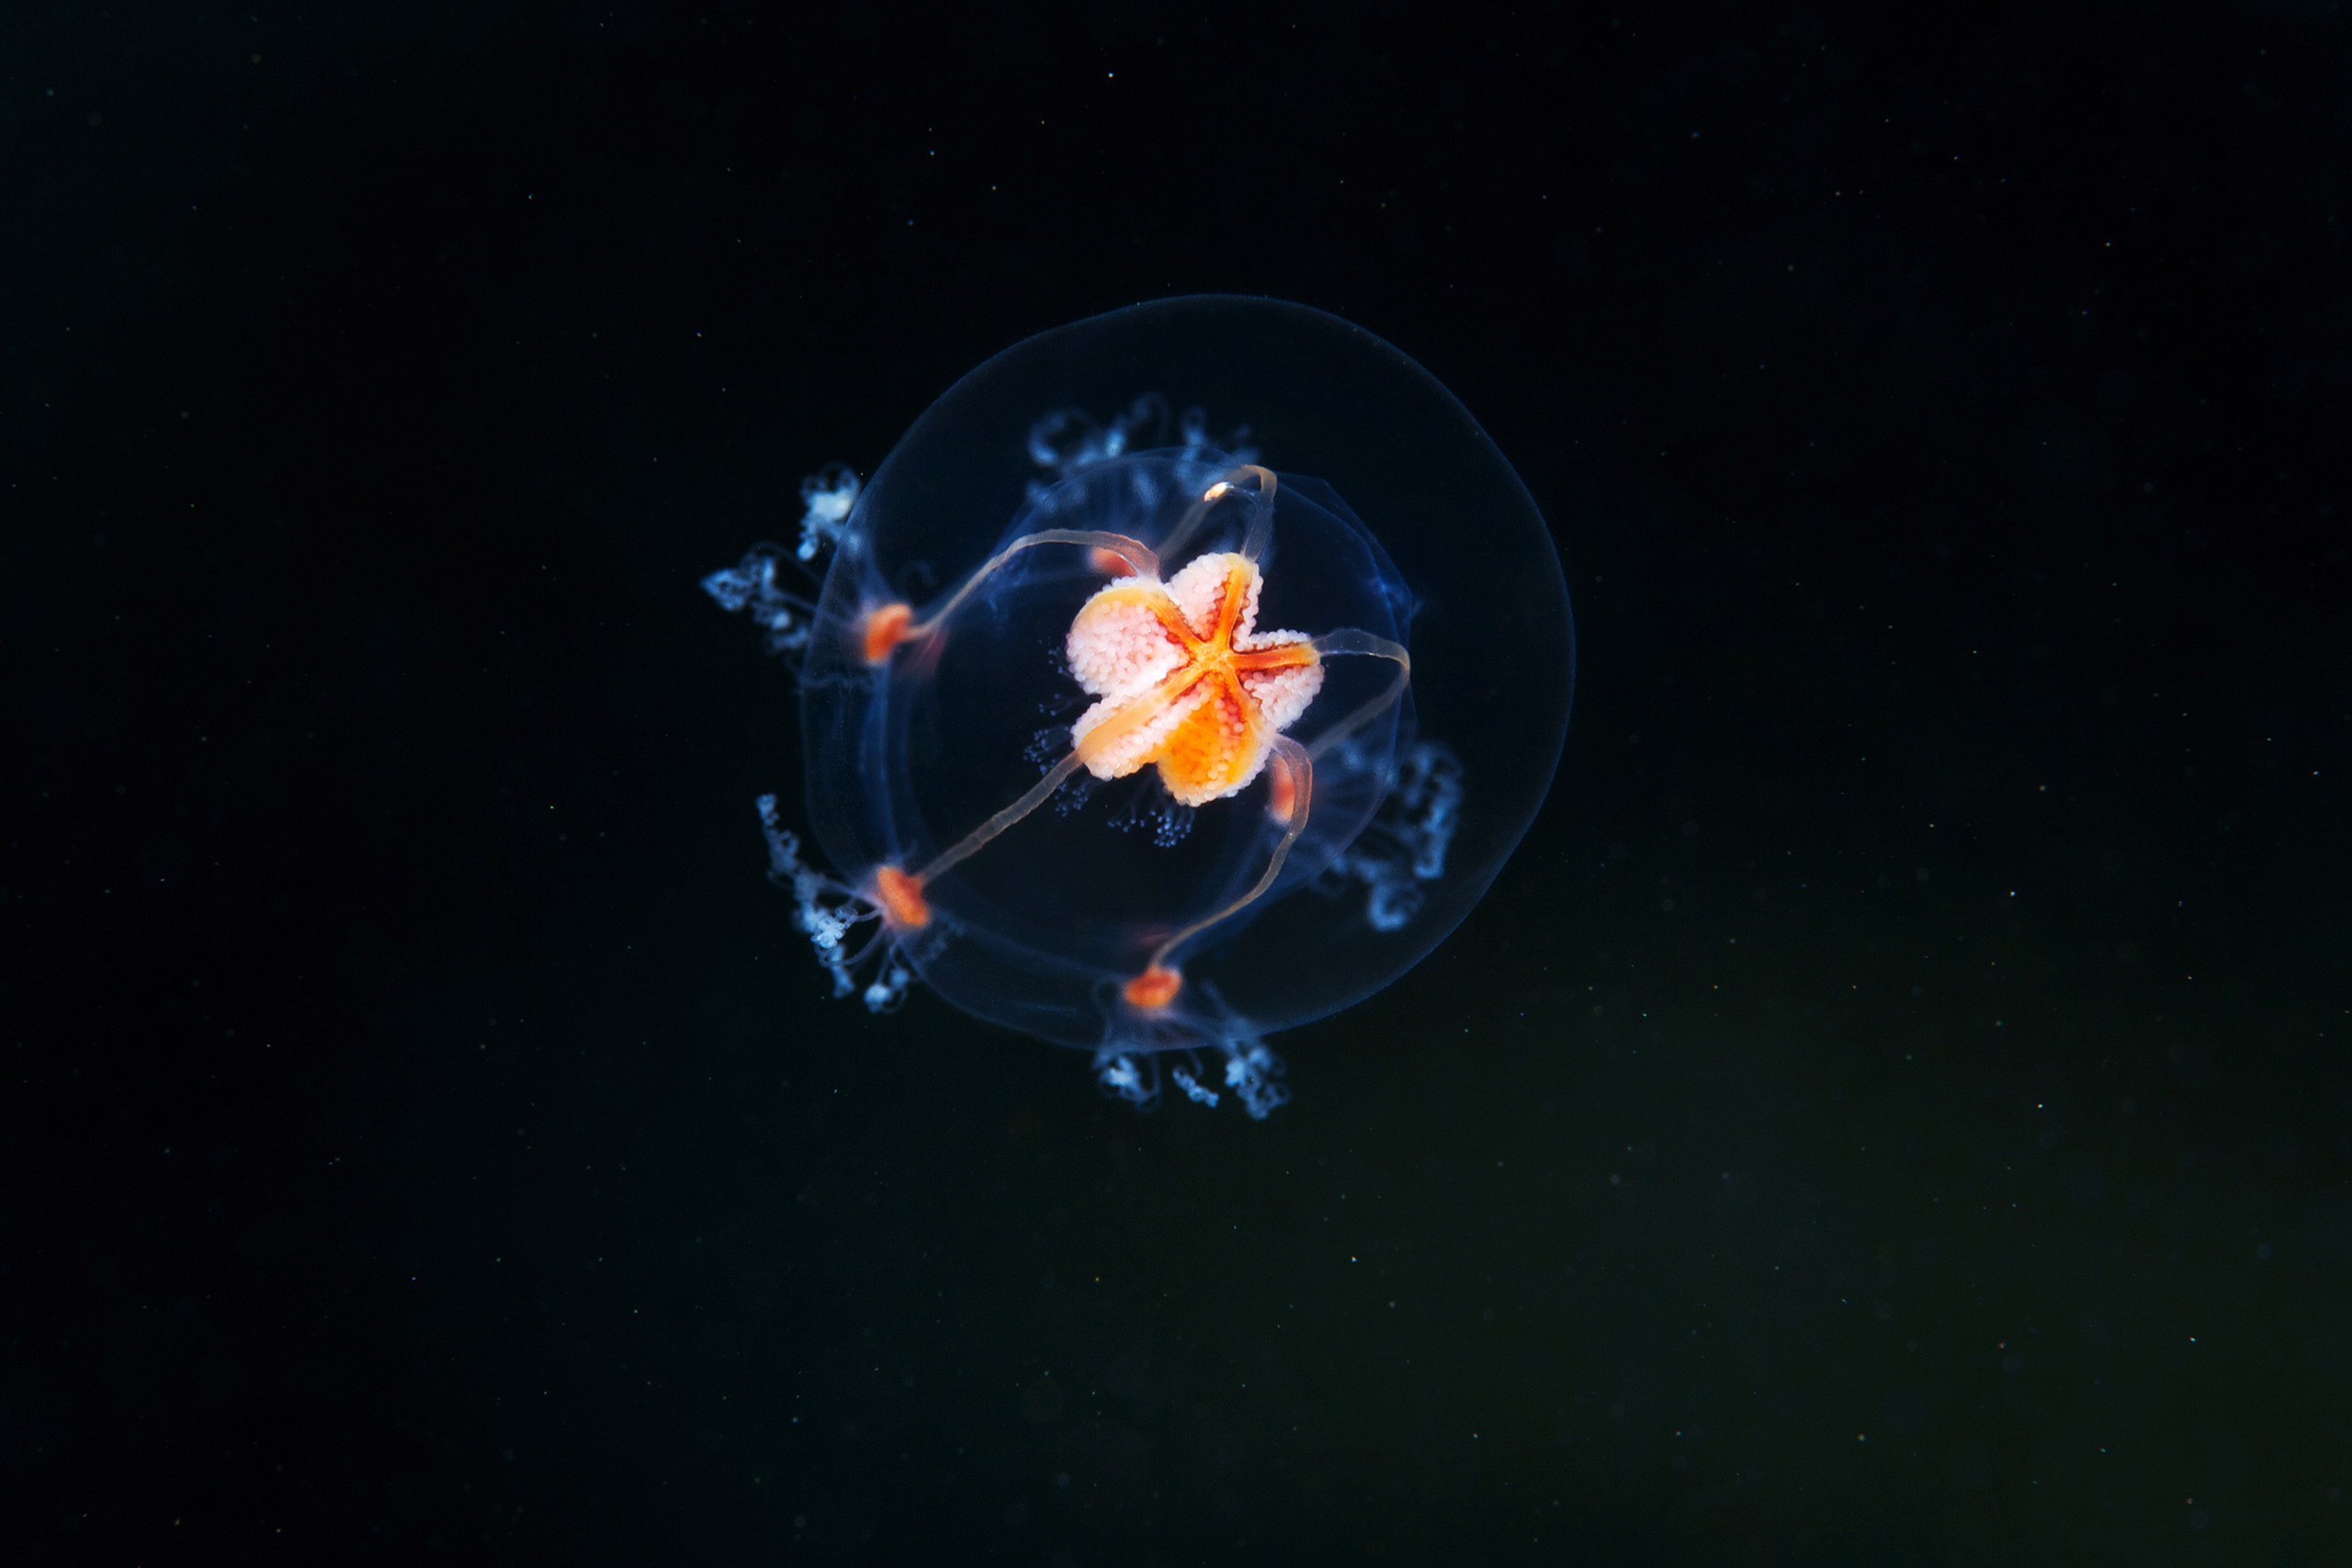 Hydrozoan jellyfish – Bougainvillia superciliaris 3